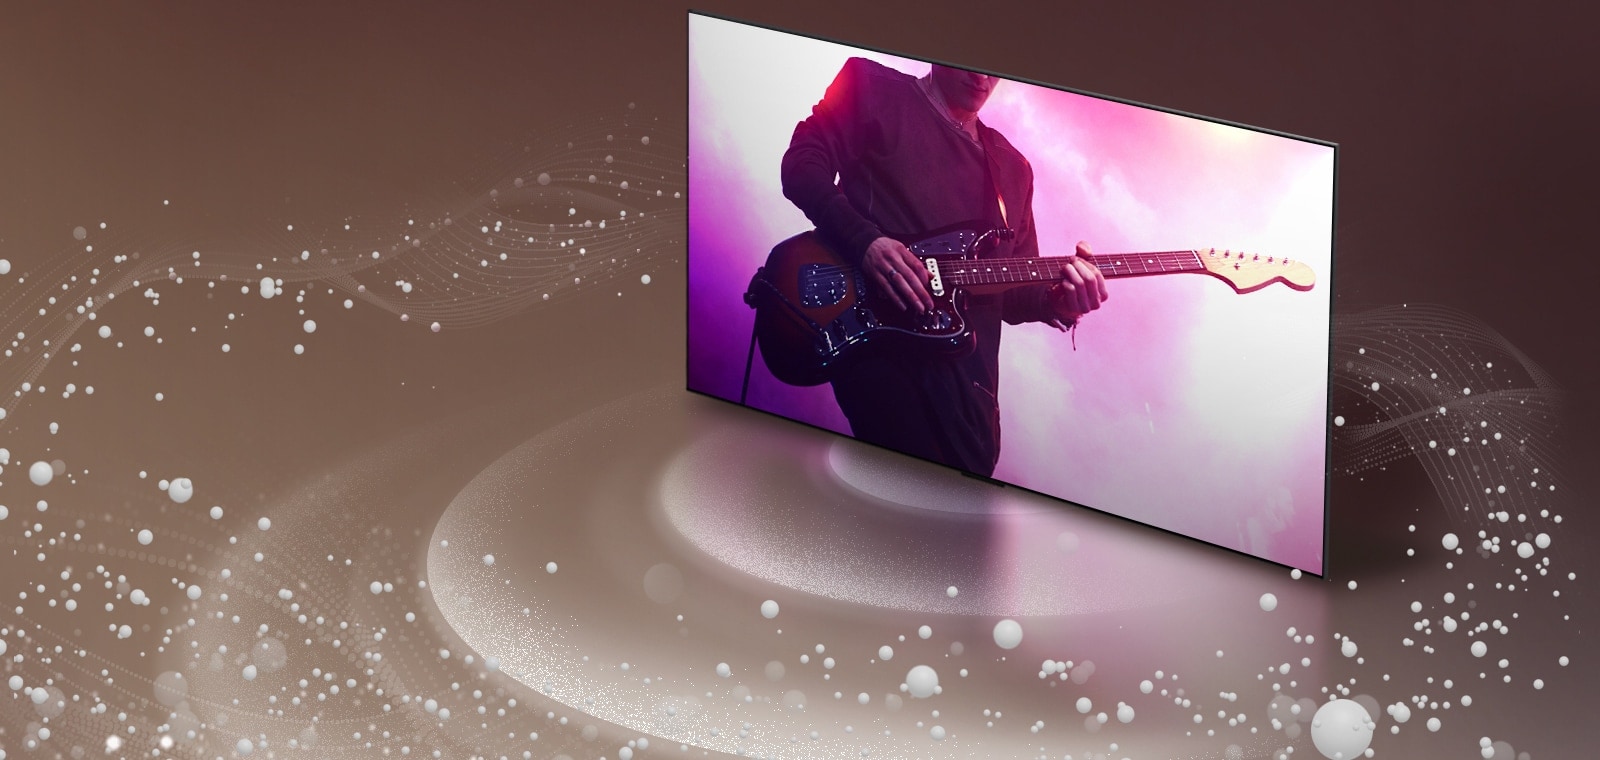 LG OLED evo M4 hiển thị các nhạc sĩ trên màn hình khi bong bóng âm thanh và sóng phát ra từ màn hình và lấp đầy không gian.